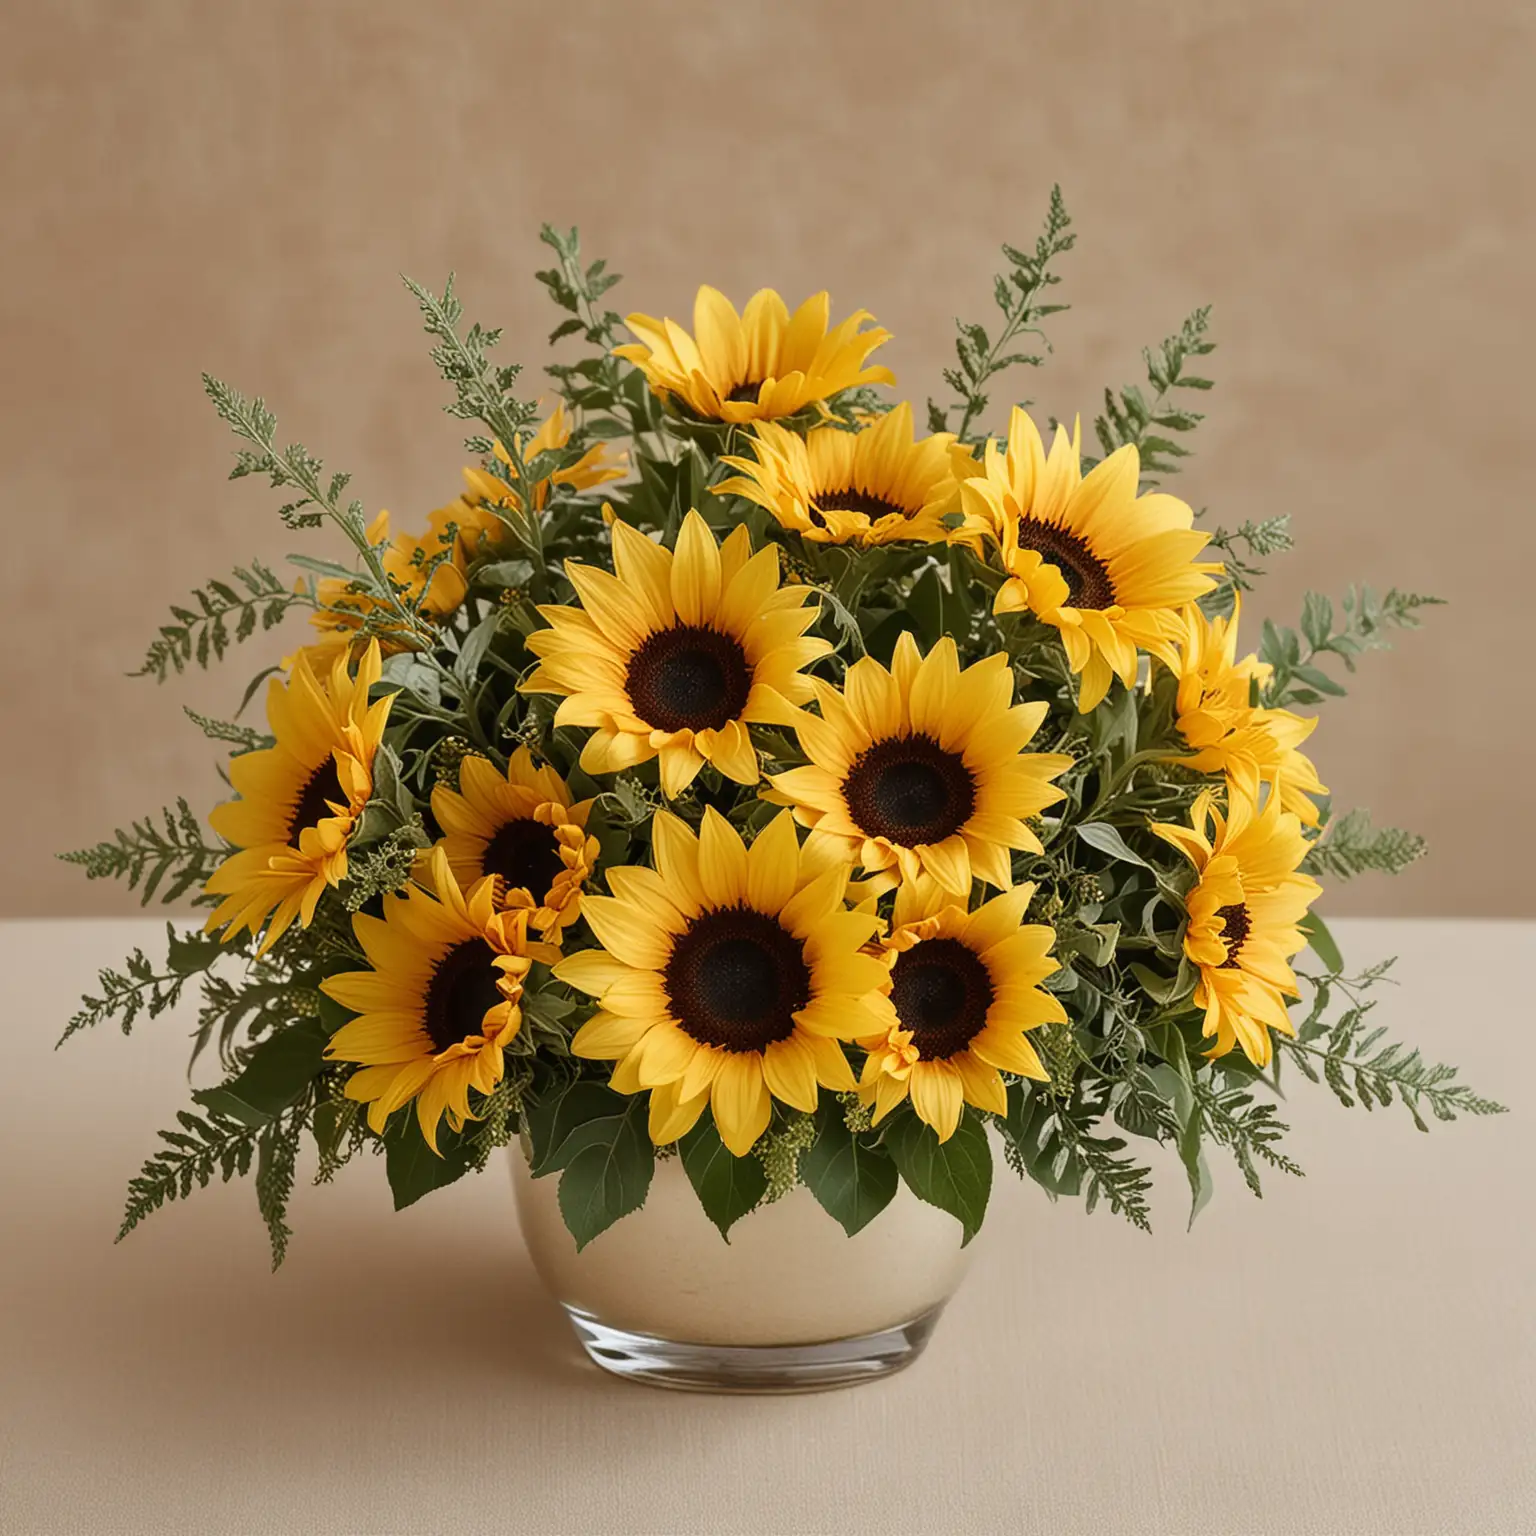 Chic-Sunflower-Wedding-Centerpiece-Small-Elegant-Floral-Arrangement